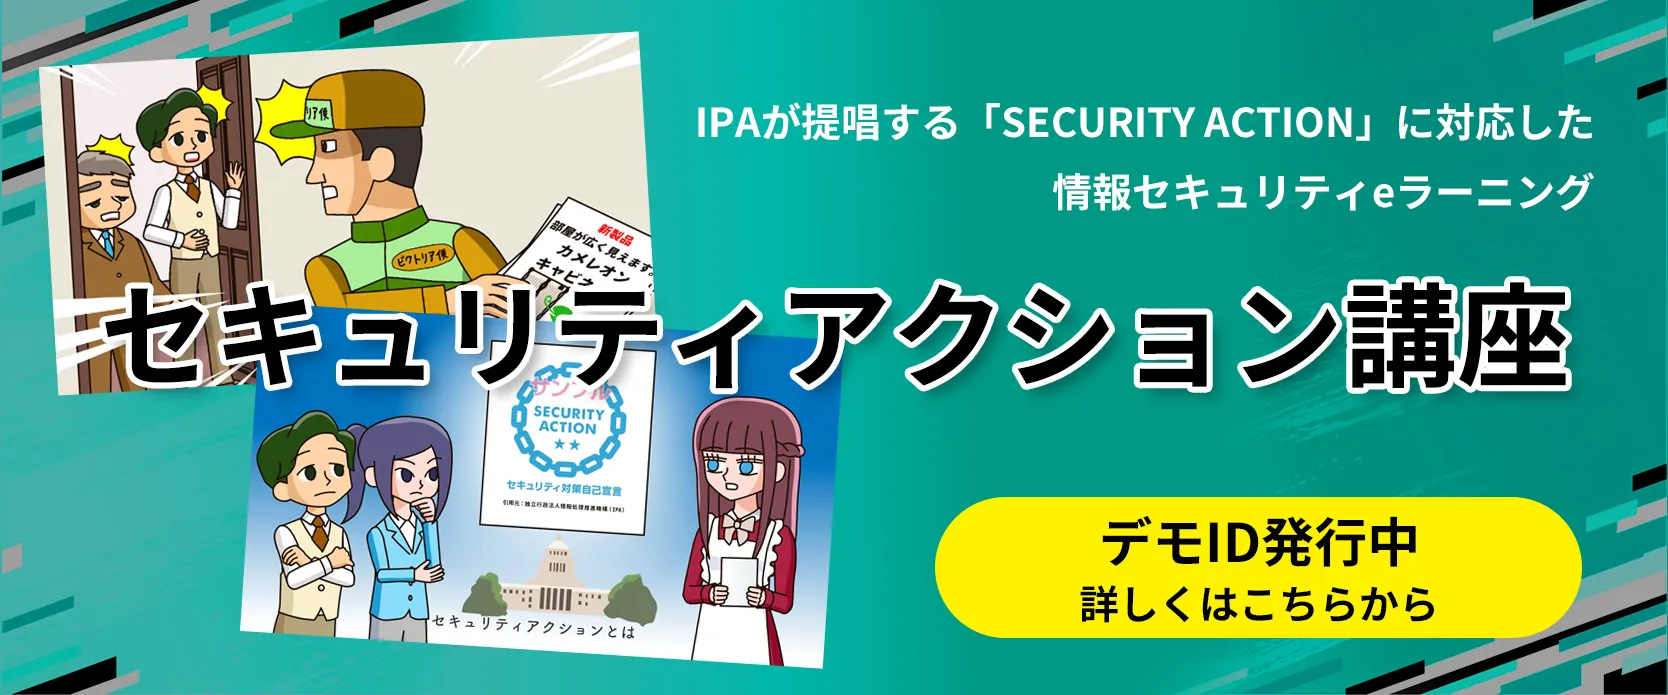 セキュリティアクション講座～IPAが提唱する「SECURITY ACTION」に対応した情報セキュリティeラーニング